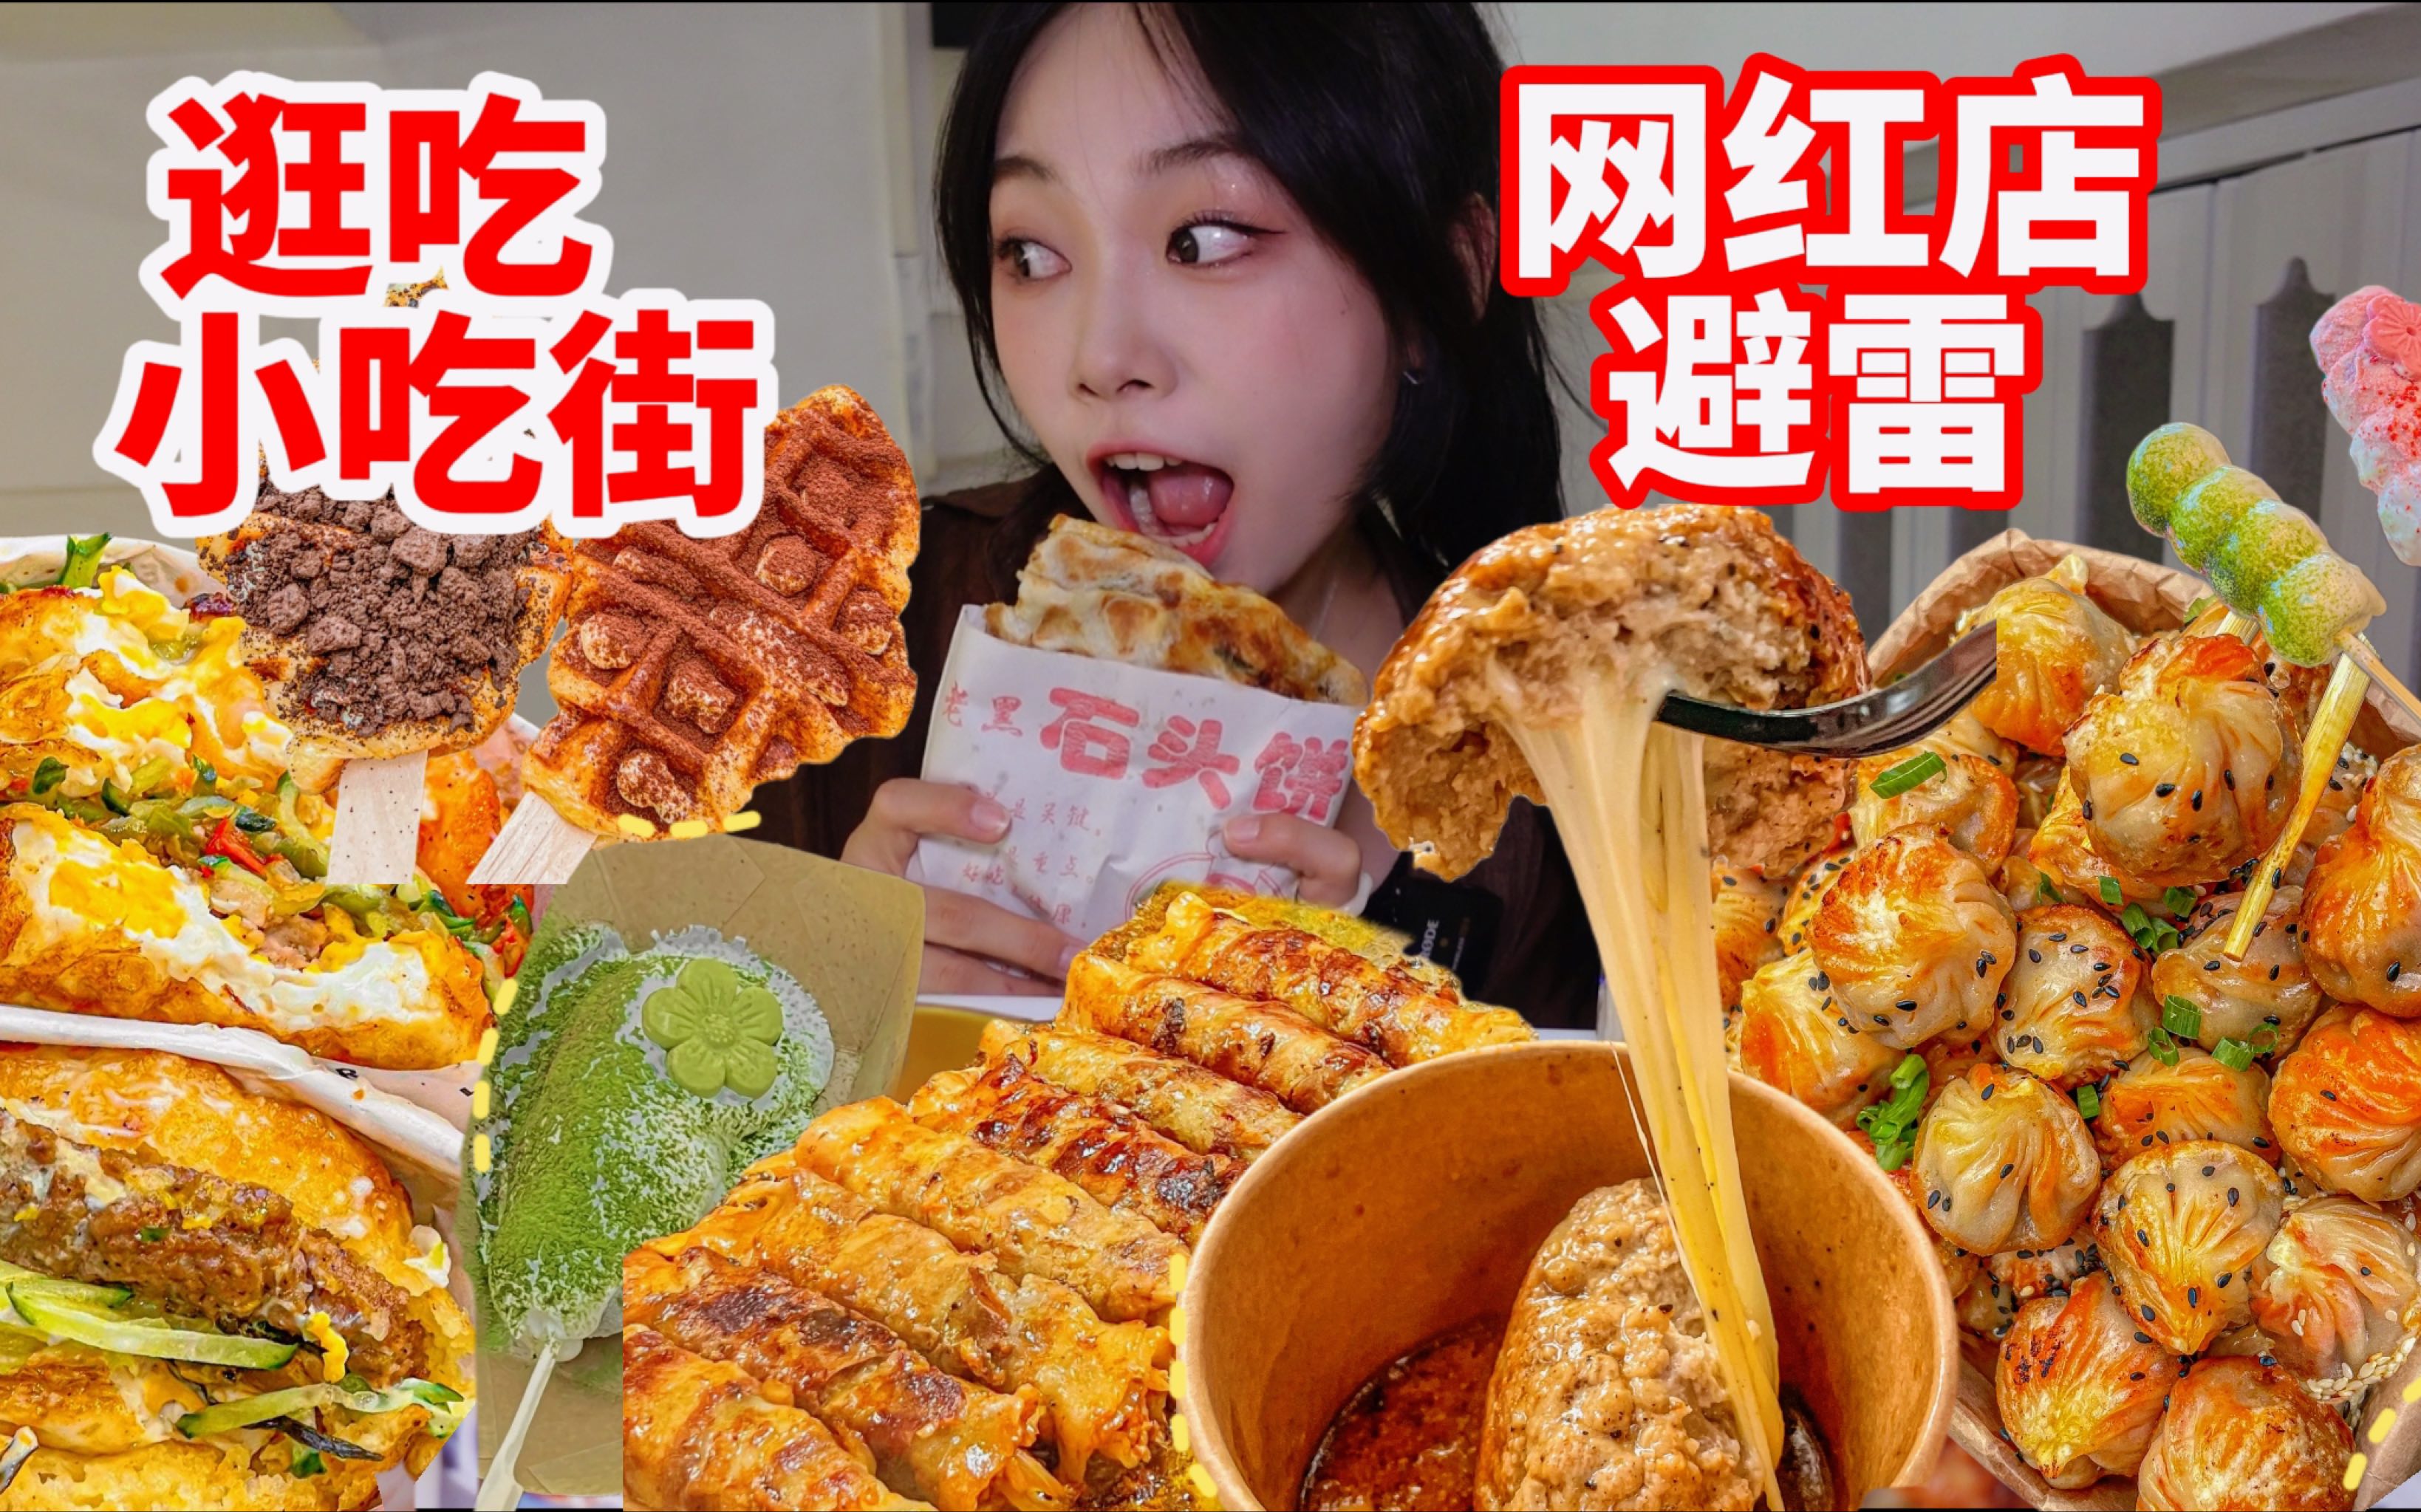 10 plats de rue chinois qui feront vibrer vos papilles gustatives